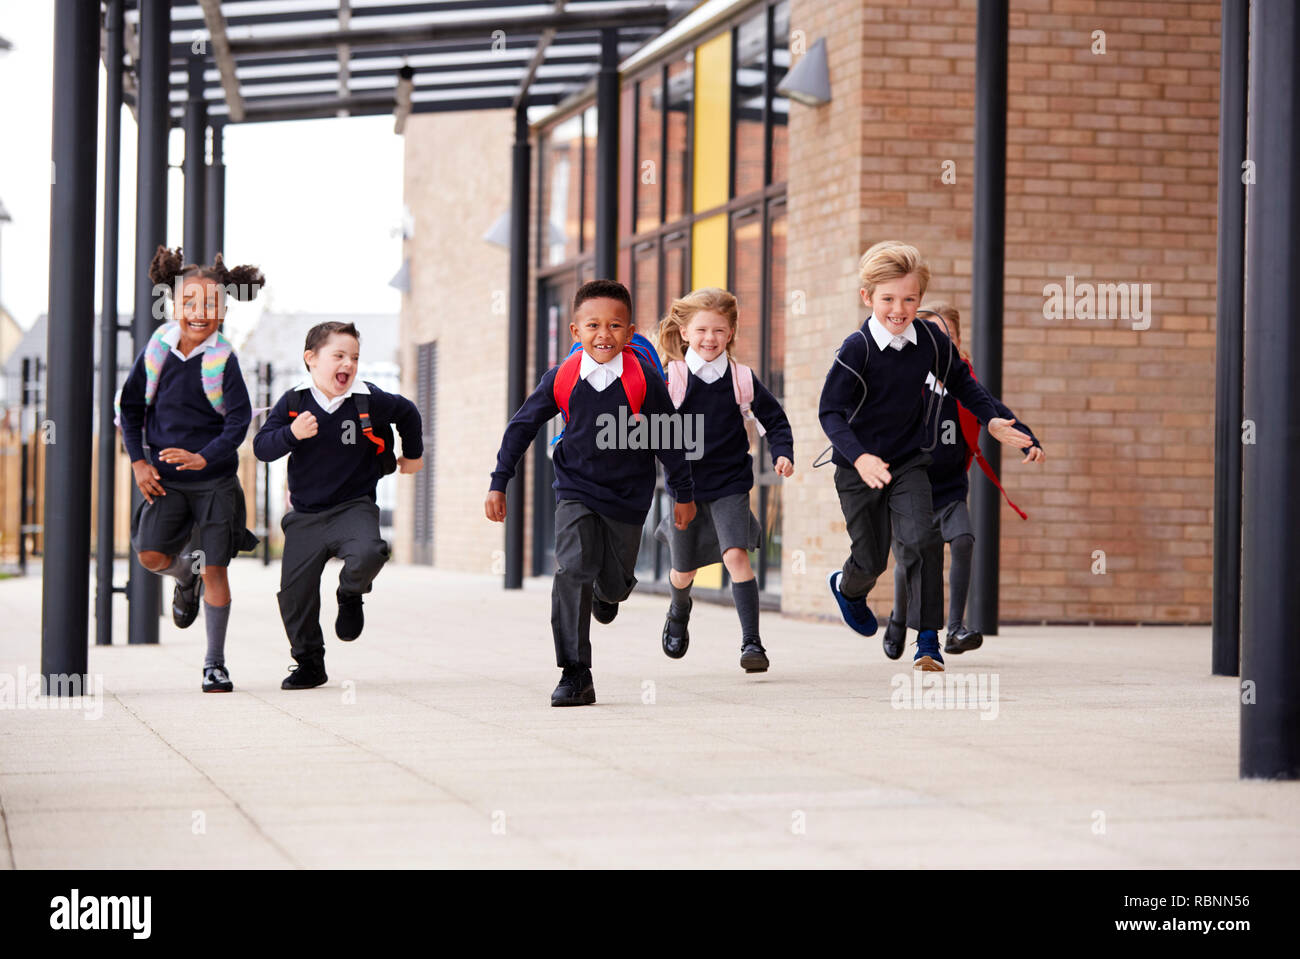 Niños de escuela primaria, vistiendo uniformes escolares y mochilas, corriendo sobre una pasarela exterior el edificio de su escuela, vista frontal Foto de stock